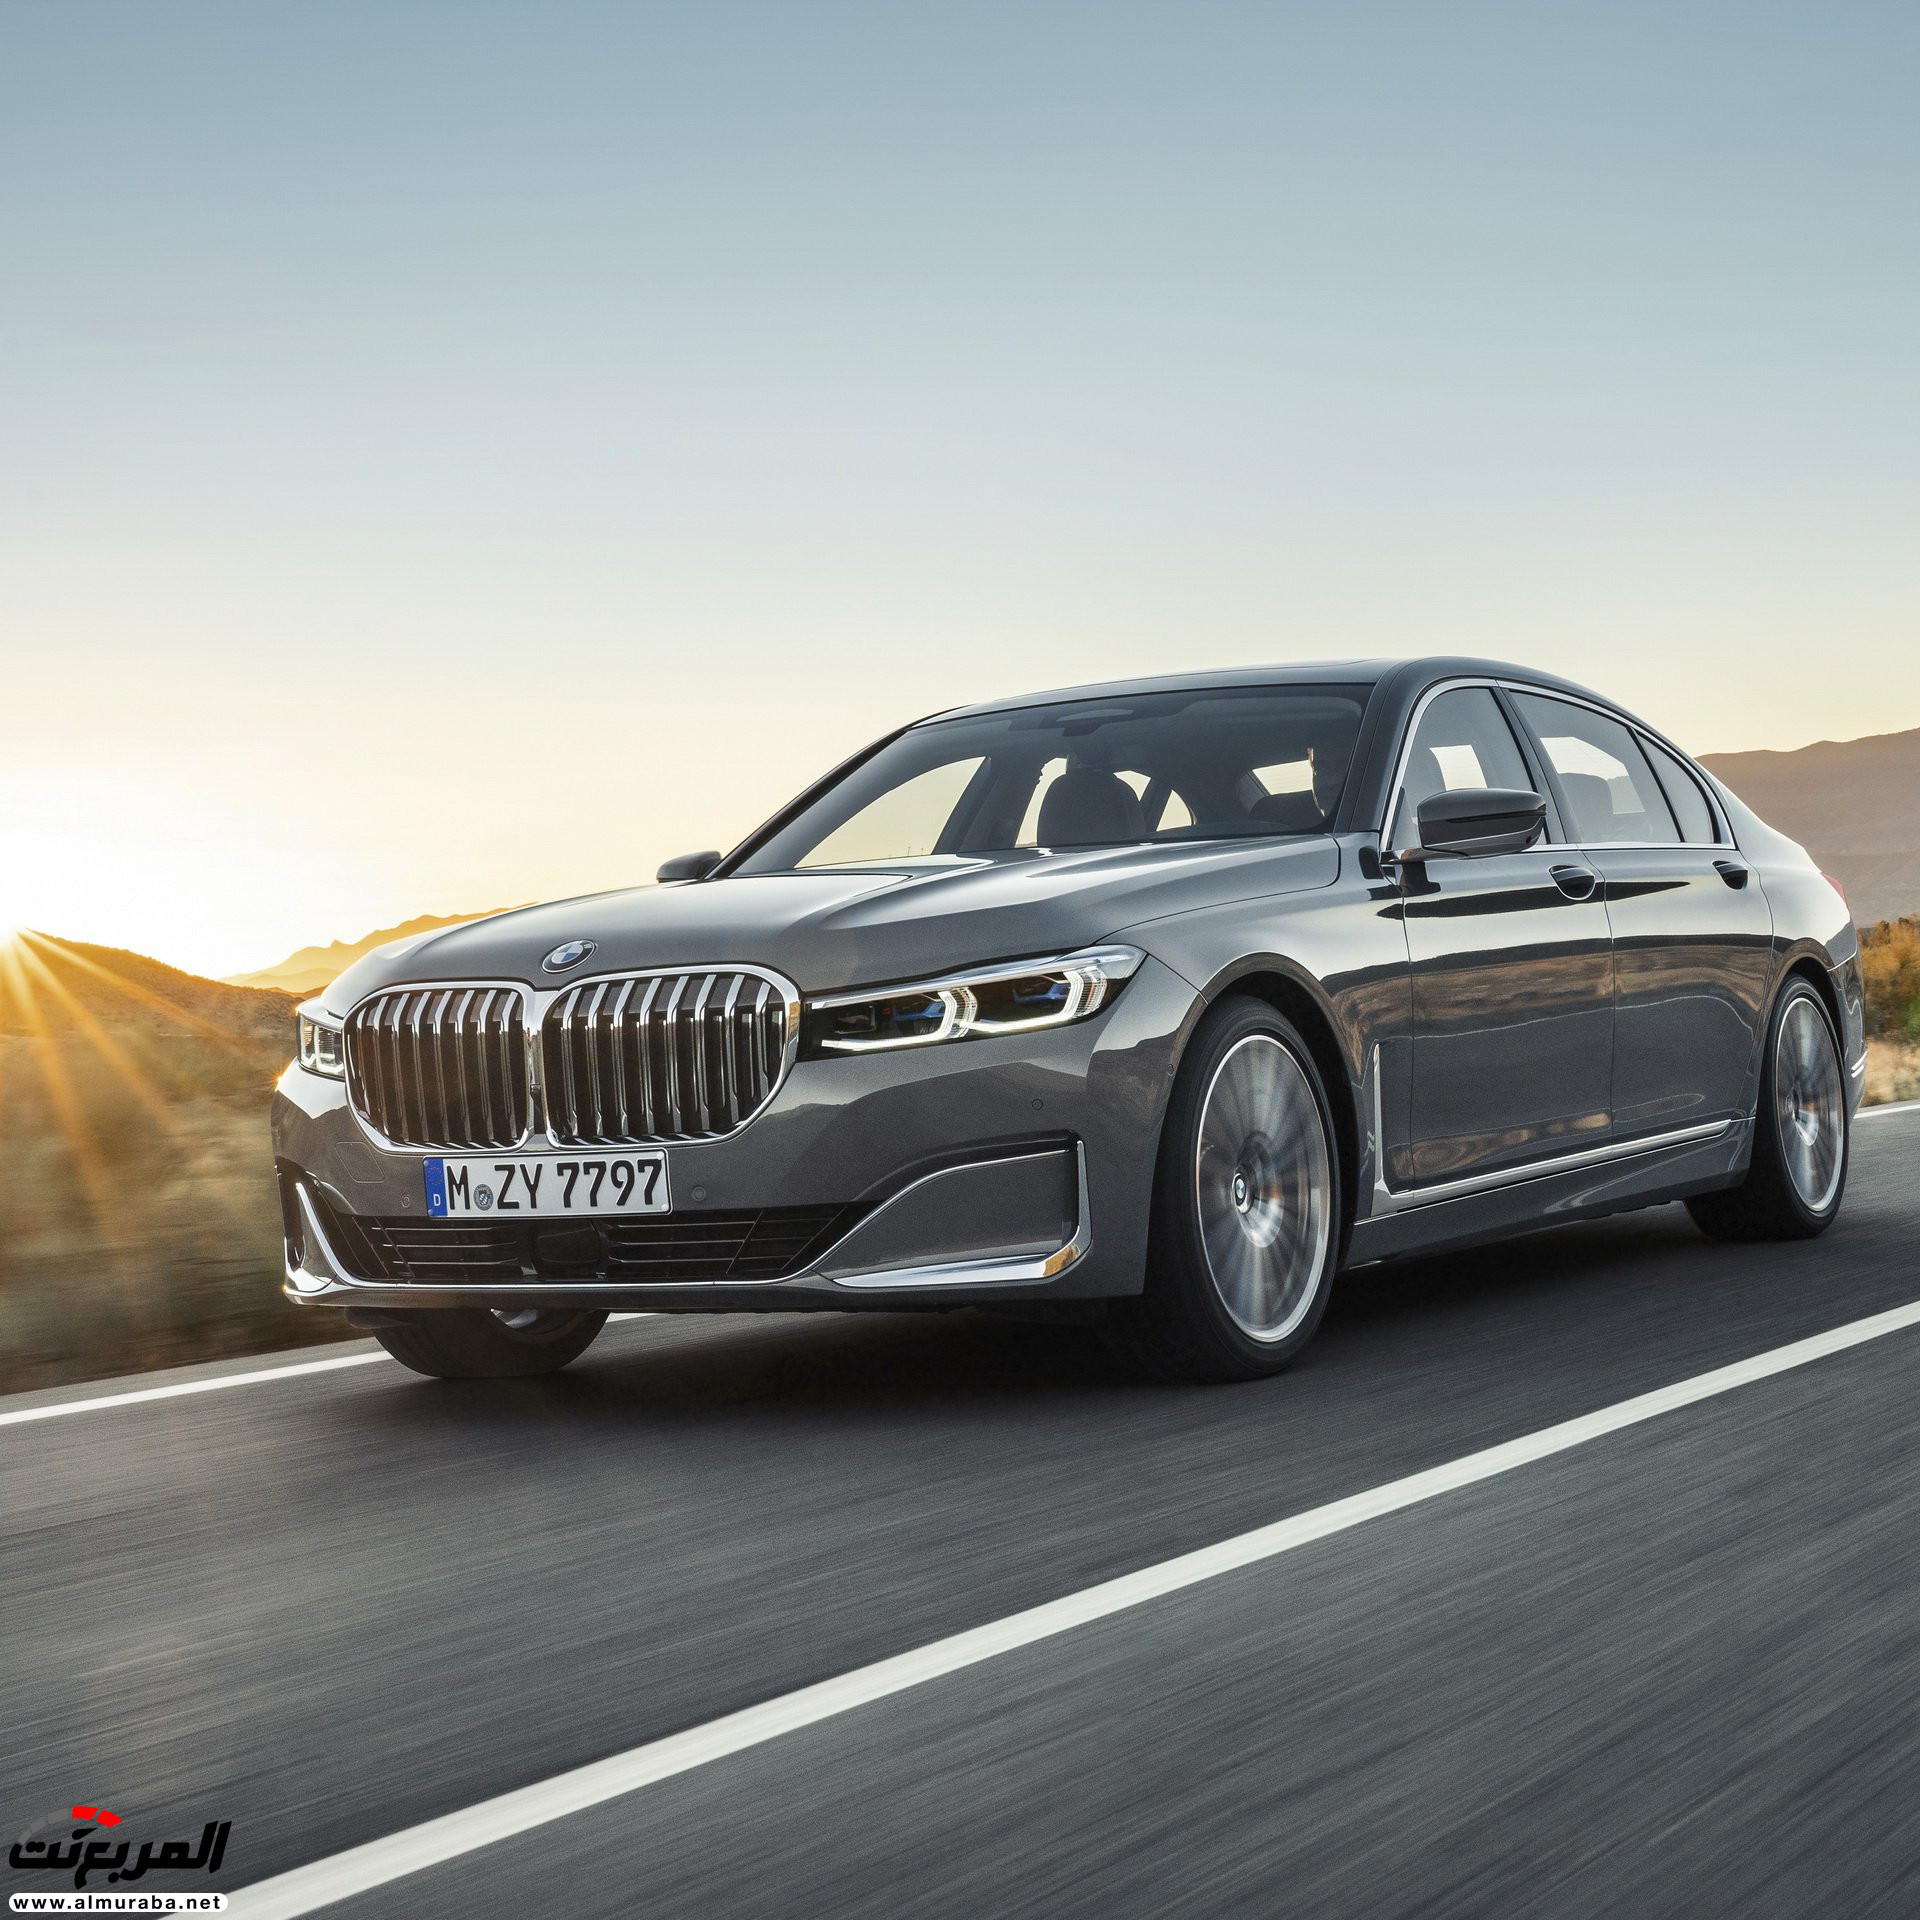 بي ام دبليو الفئة السابعة 2020 المحدثة تكشف نفسها رسمياً "صور ومواصفات" BMW 7 Series 270